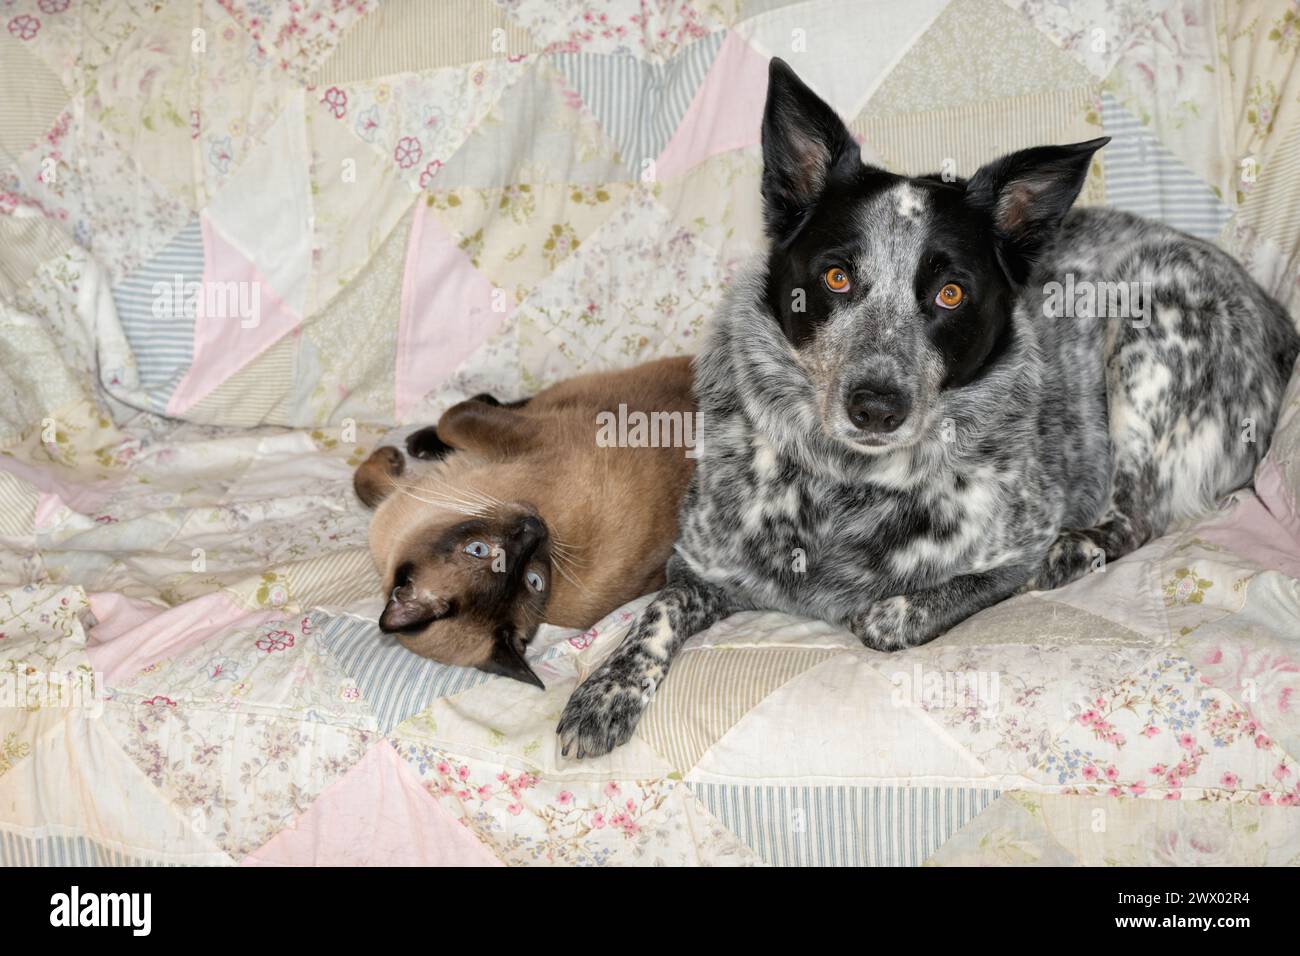 Un cane maculato bianco e nero e un gatto siamese riposano comodamente uno accanto all'altro su un divano Foto Stock